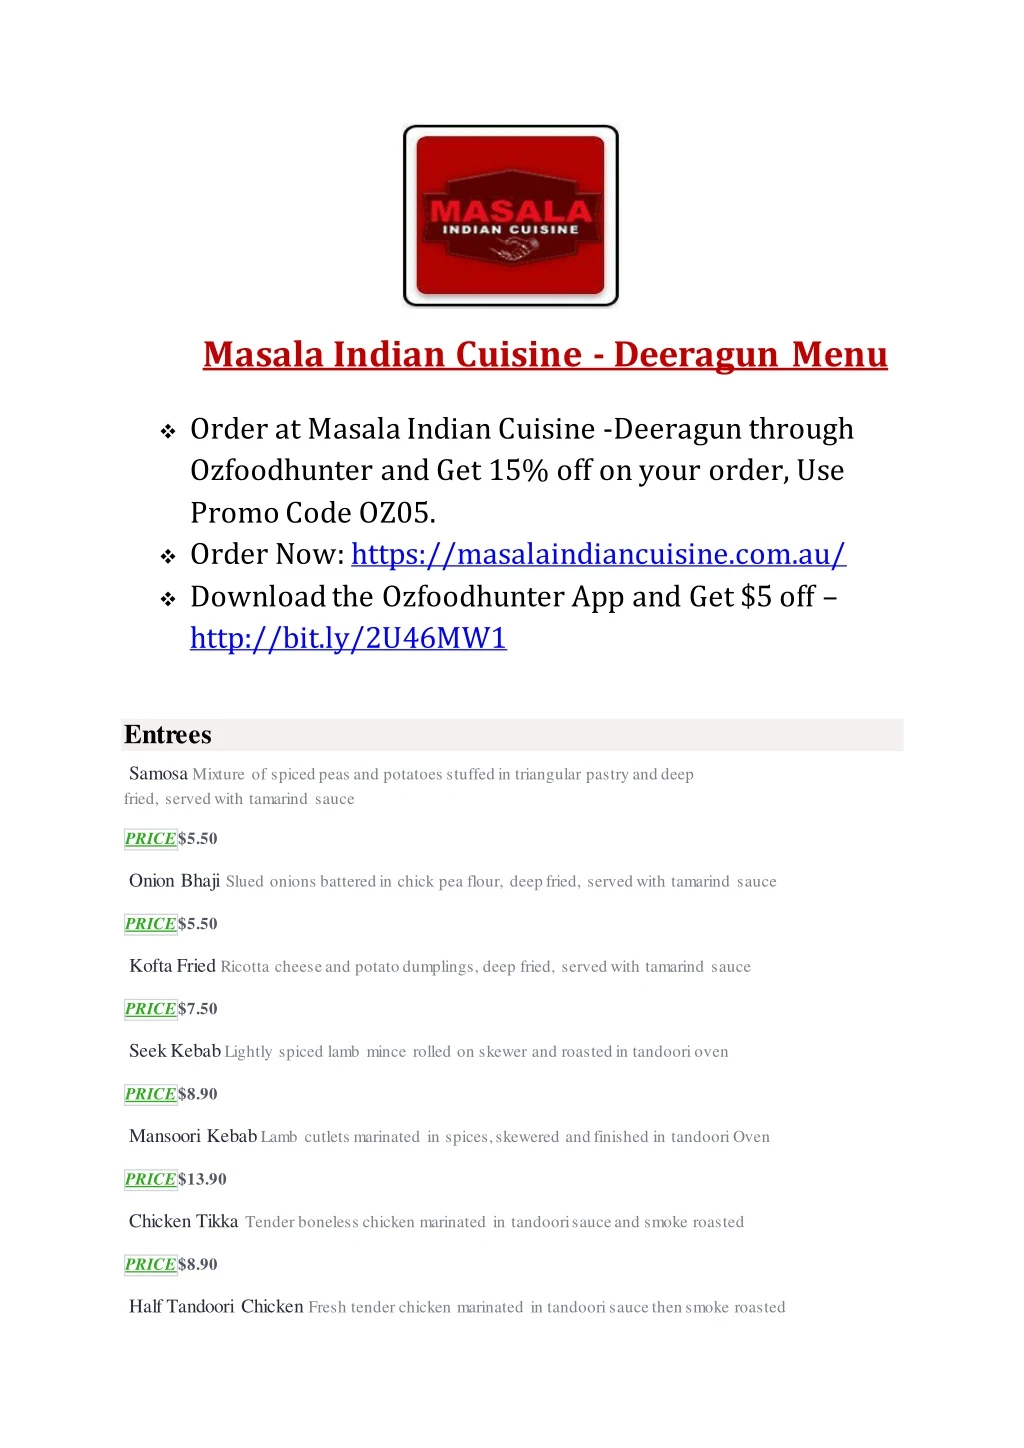 masala indian cuisine deeragun menu order